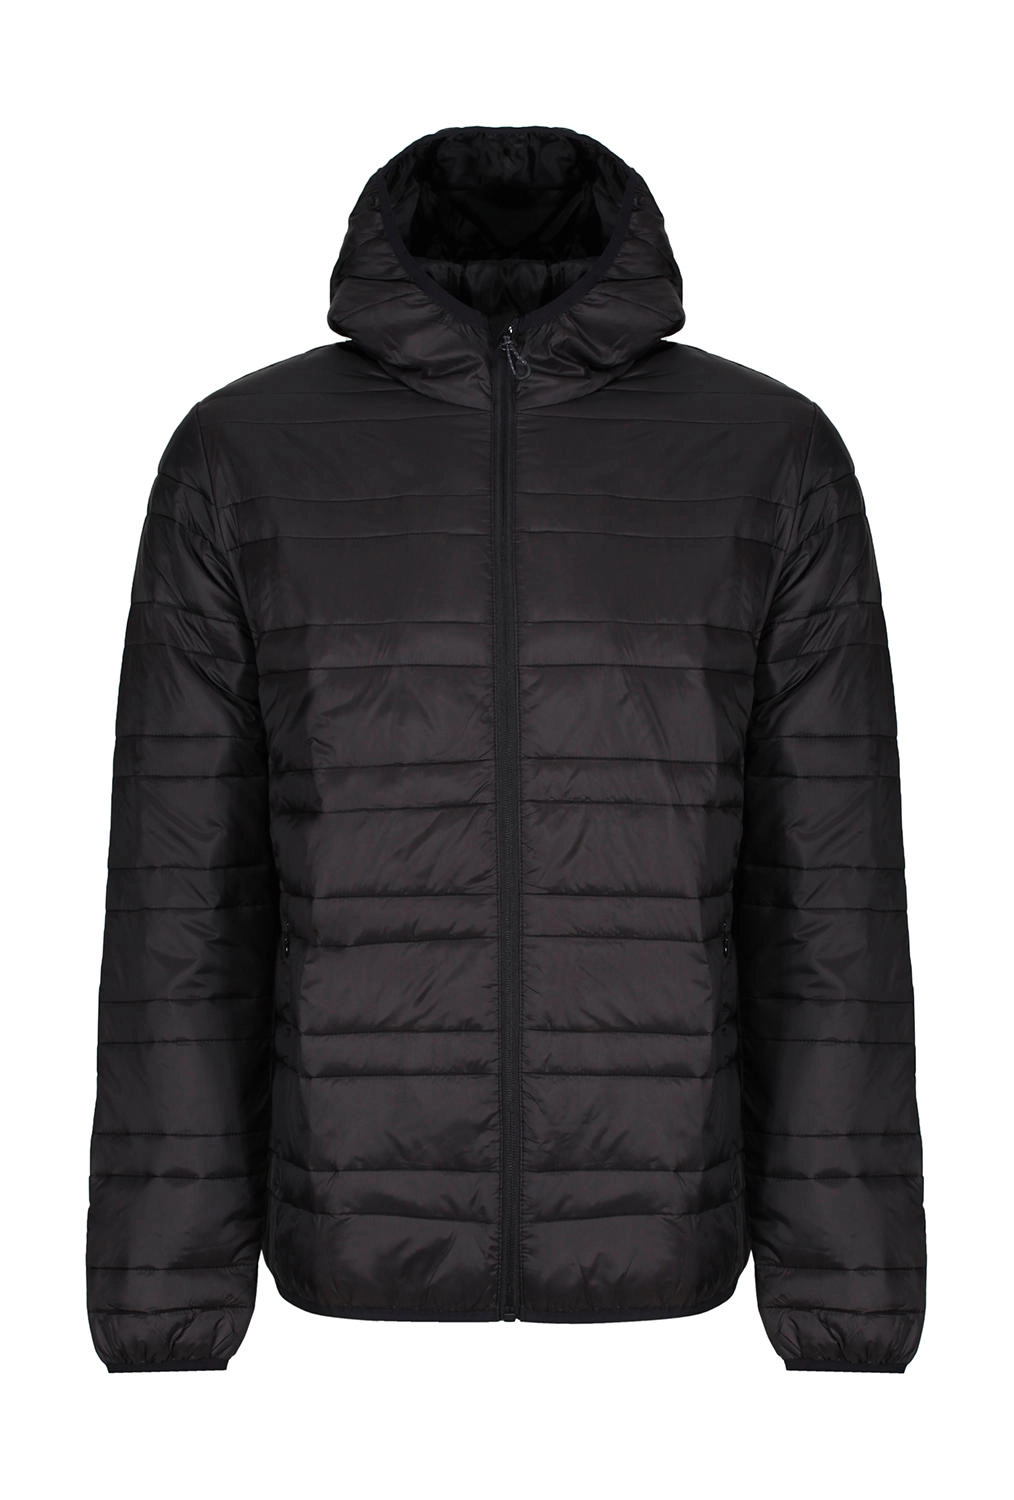 Hooded Firedown Baffle Jacket zum Besticken und Bedrucken in der Farbe Black/Black mit Ihren Logo, Schriftzug oder Motiv.